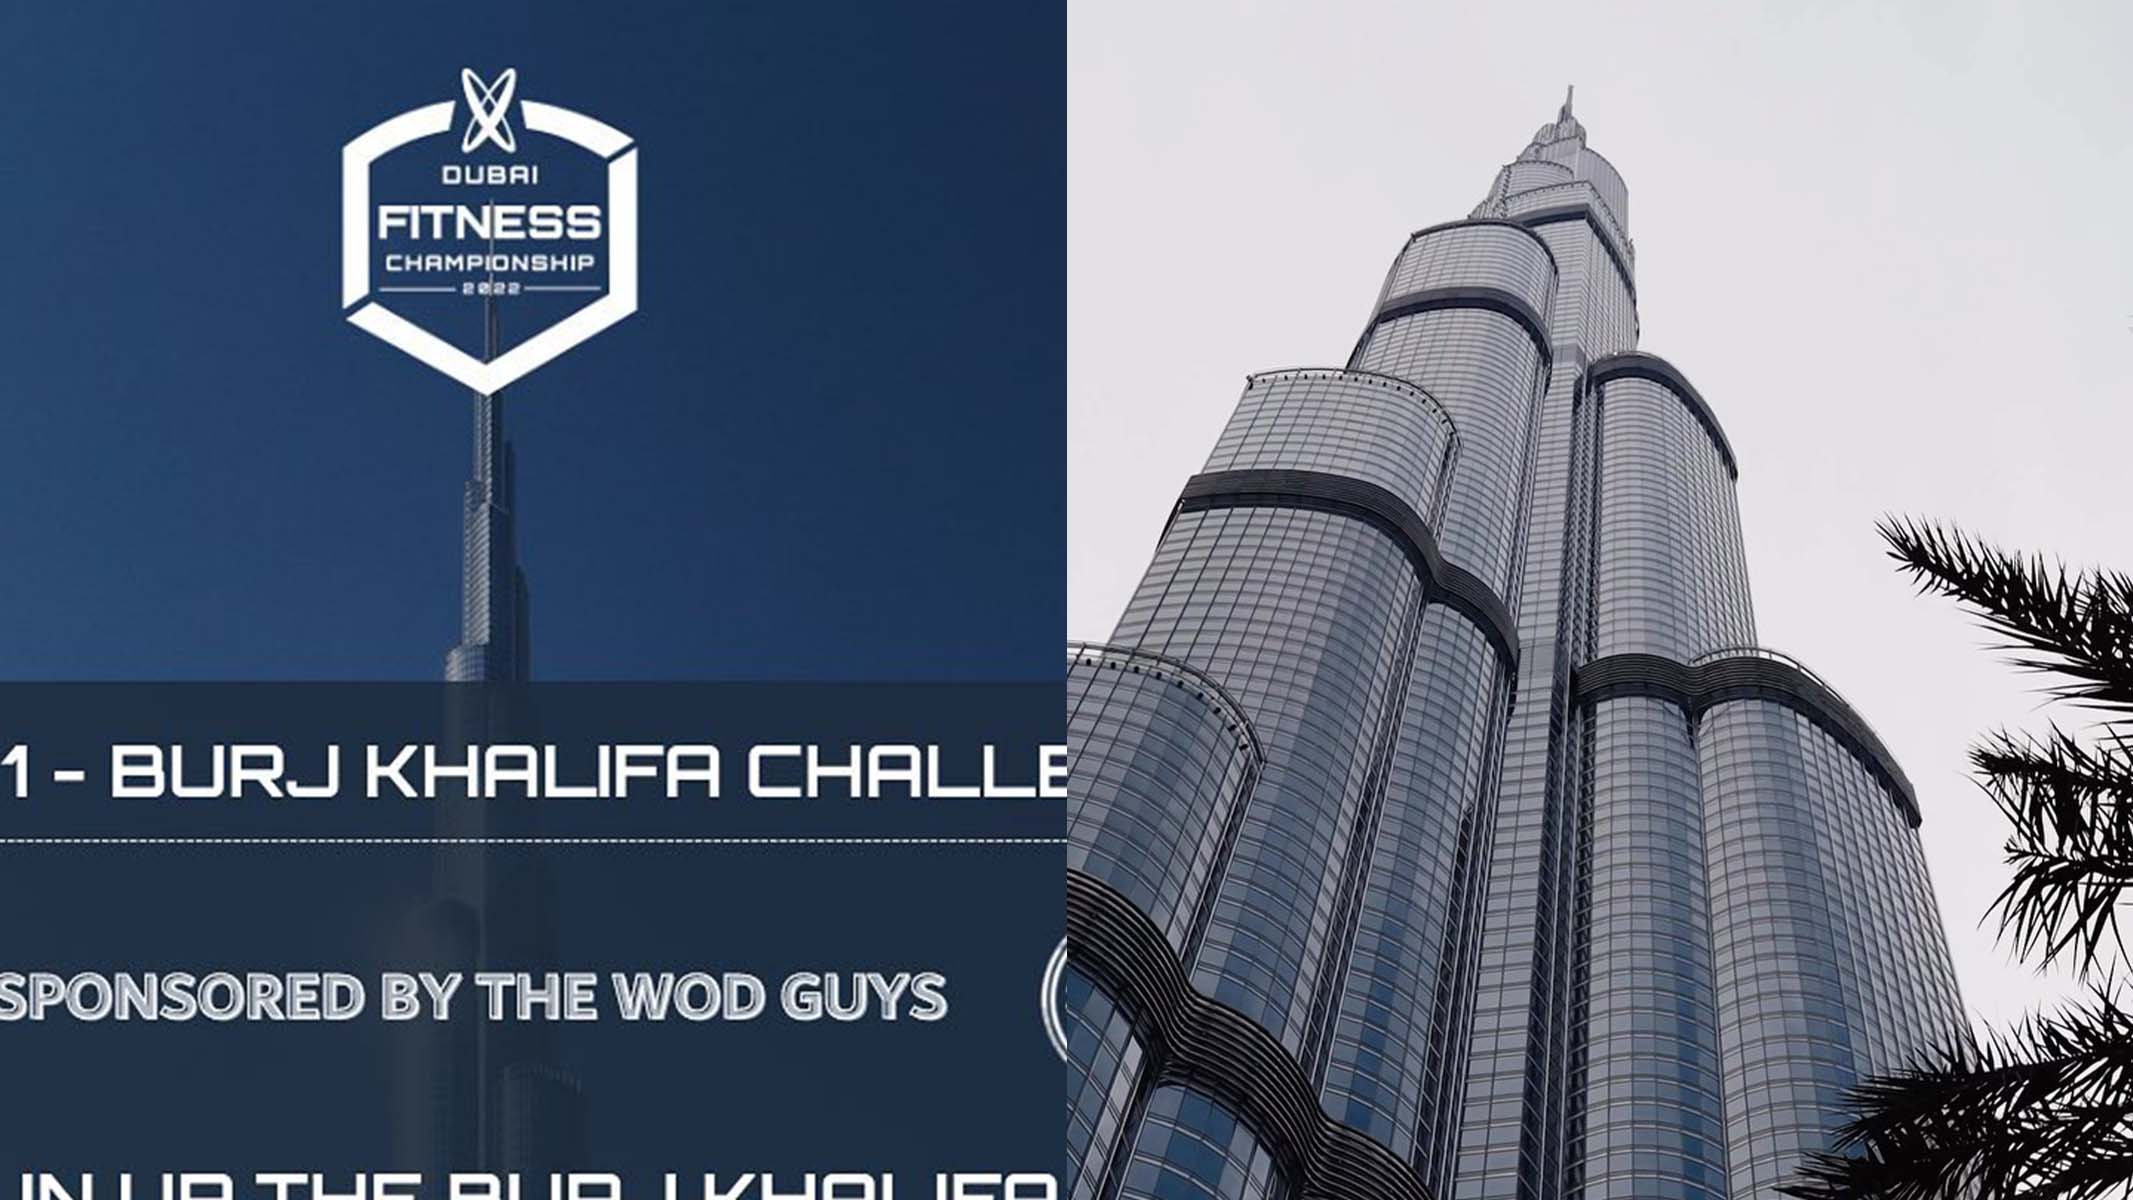 Découvrez la première épreuve du Dubai Fitness Championship du jamais